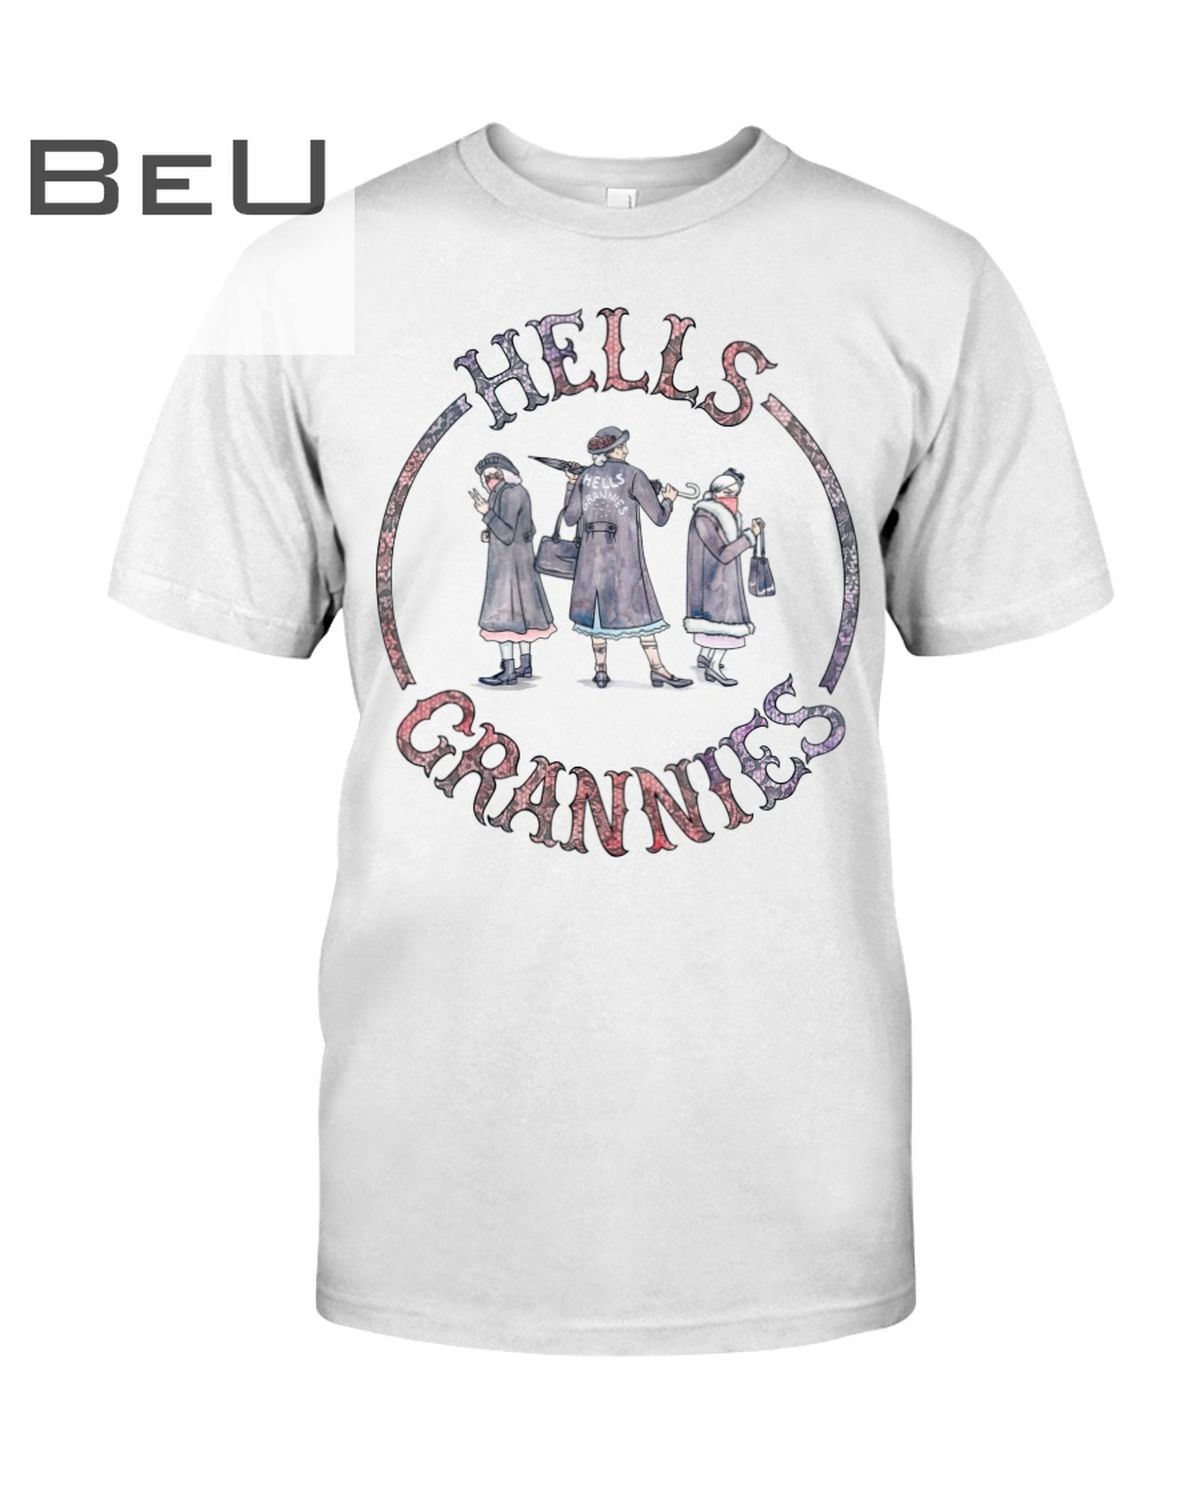 Hells Grannies Shirt